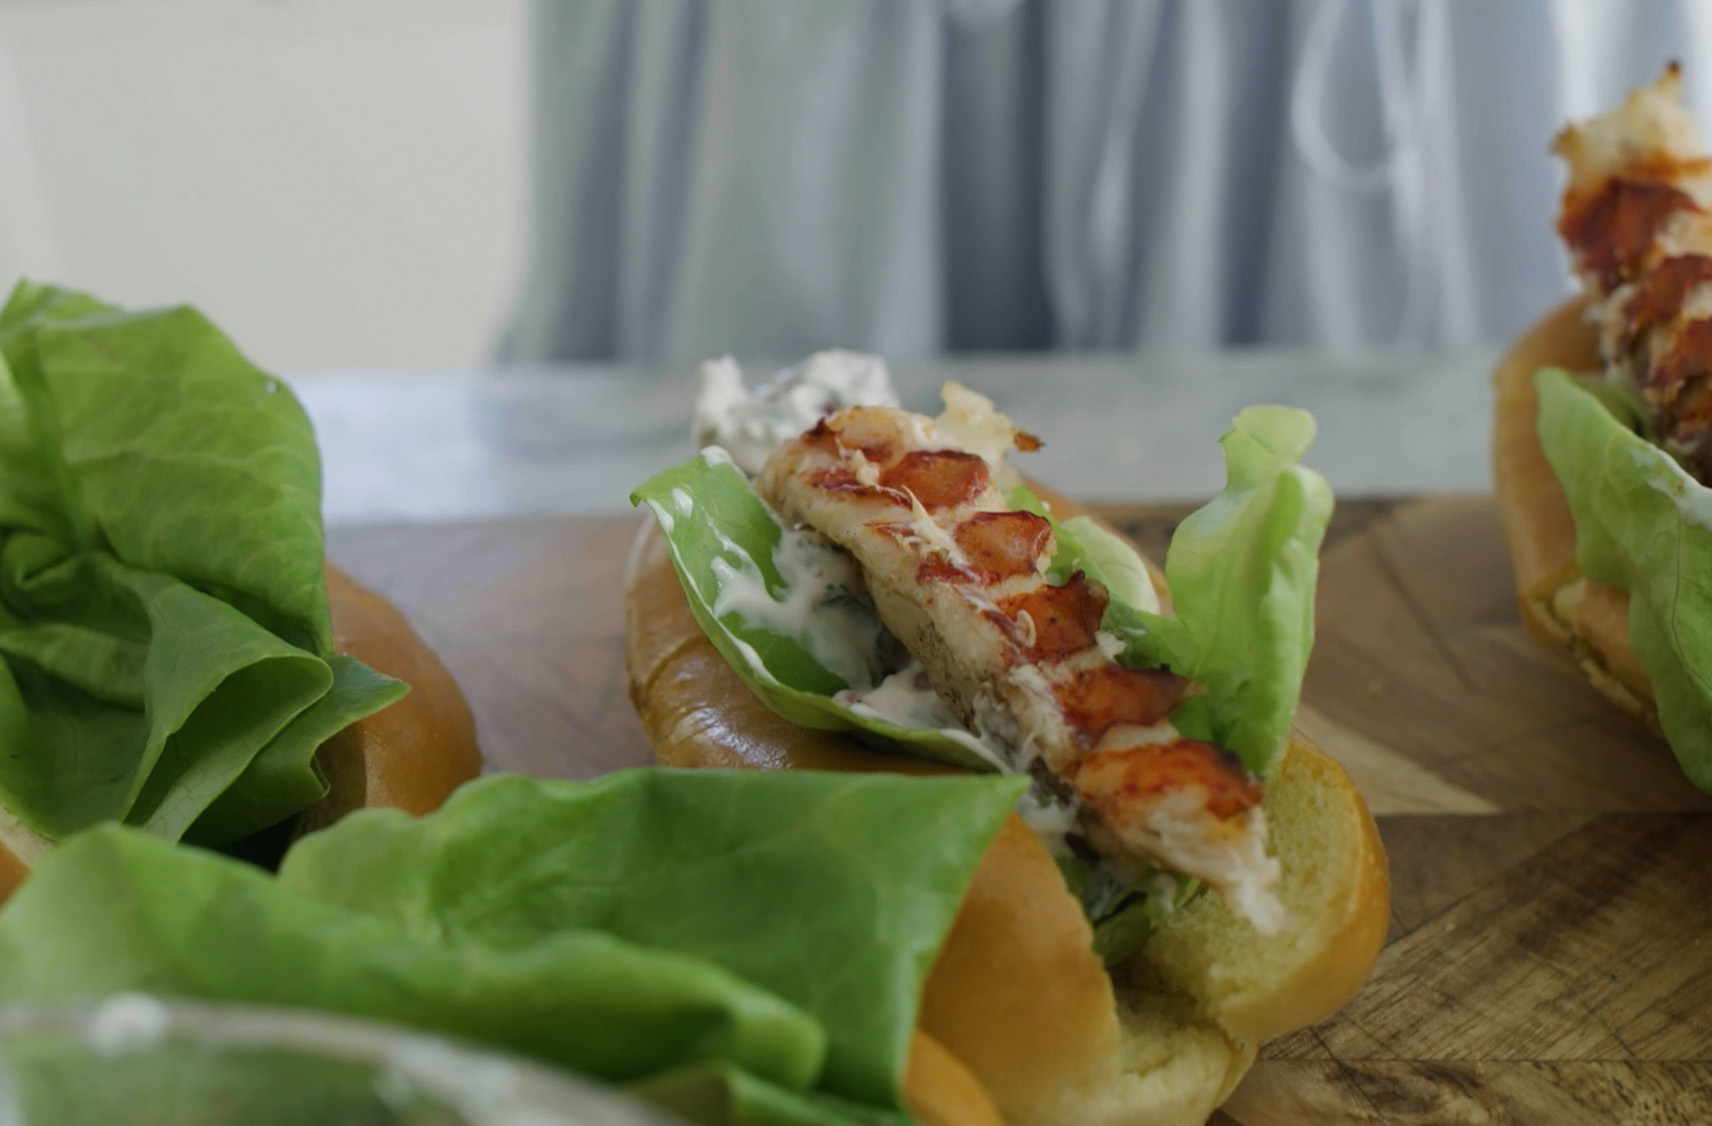 Des pains à hot dog garnis de laitue fraîche sur une table à côté d'autres pains déjà préparés avec une brochette de queue de homard et de la sauce crémeuse.